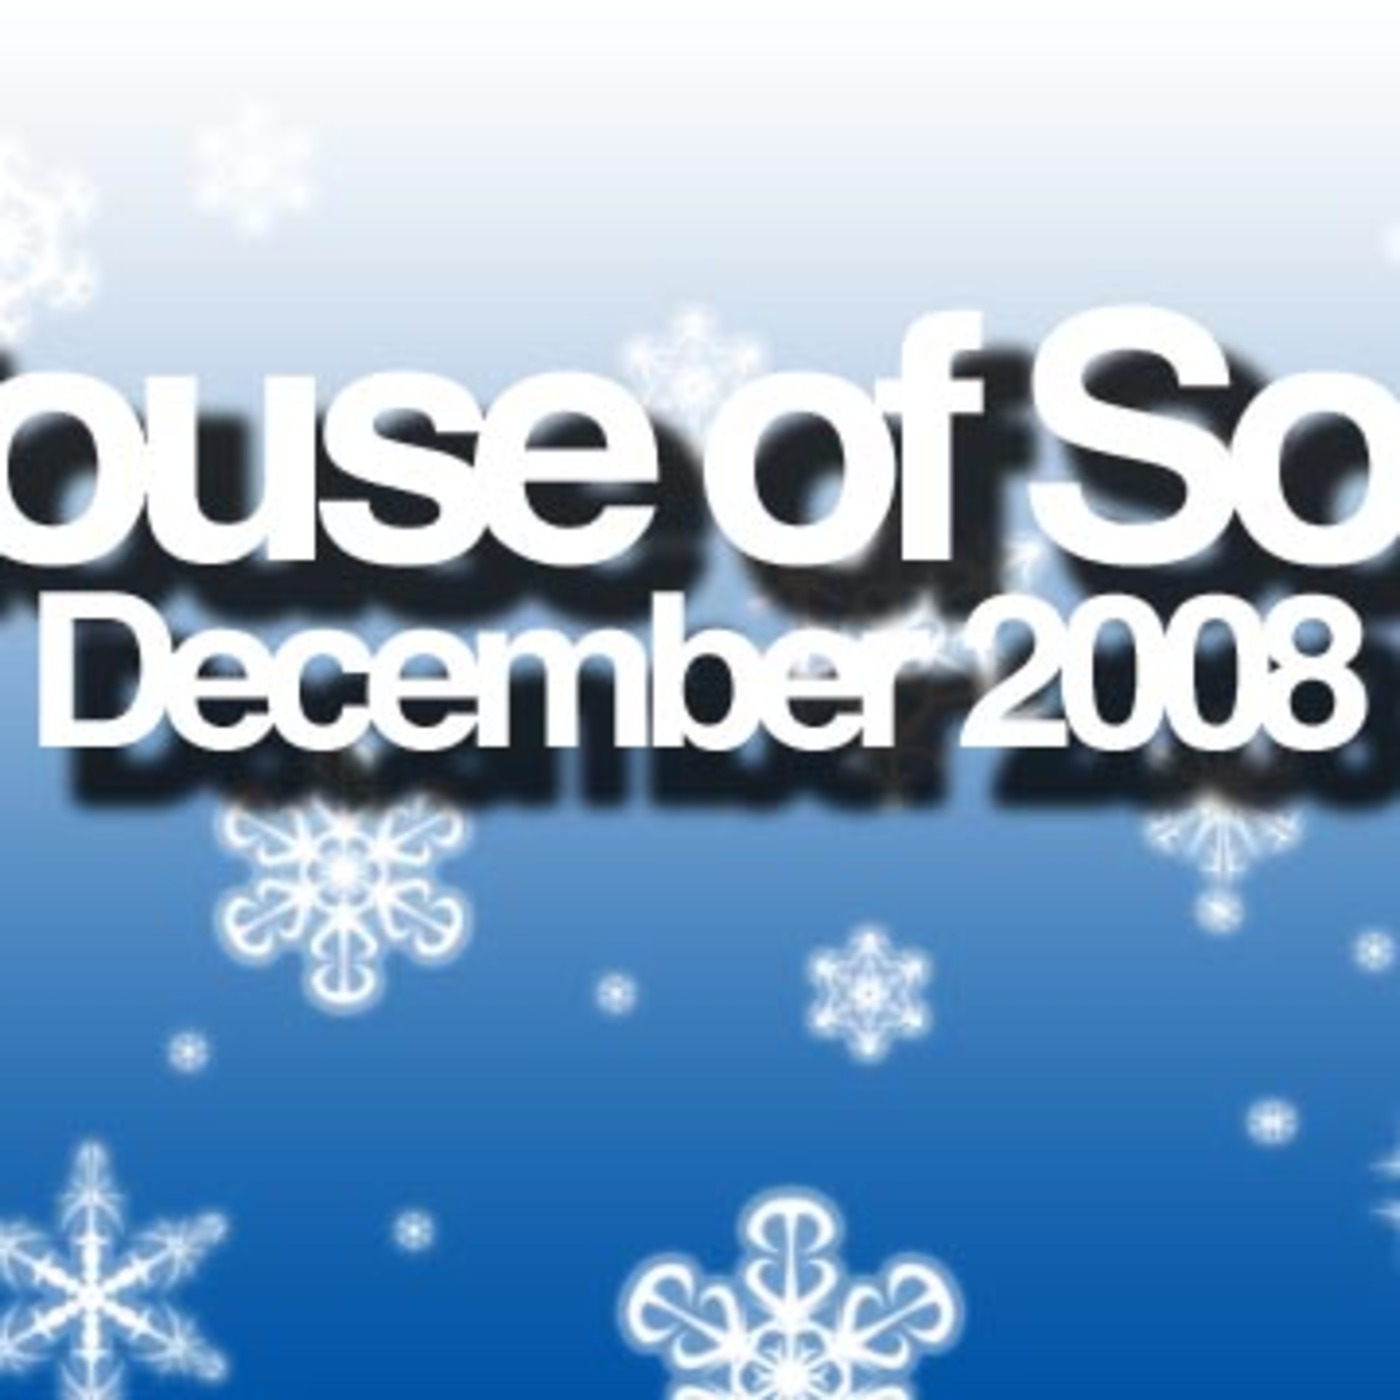 House of Soul: December 2008